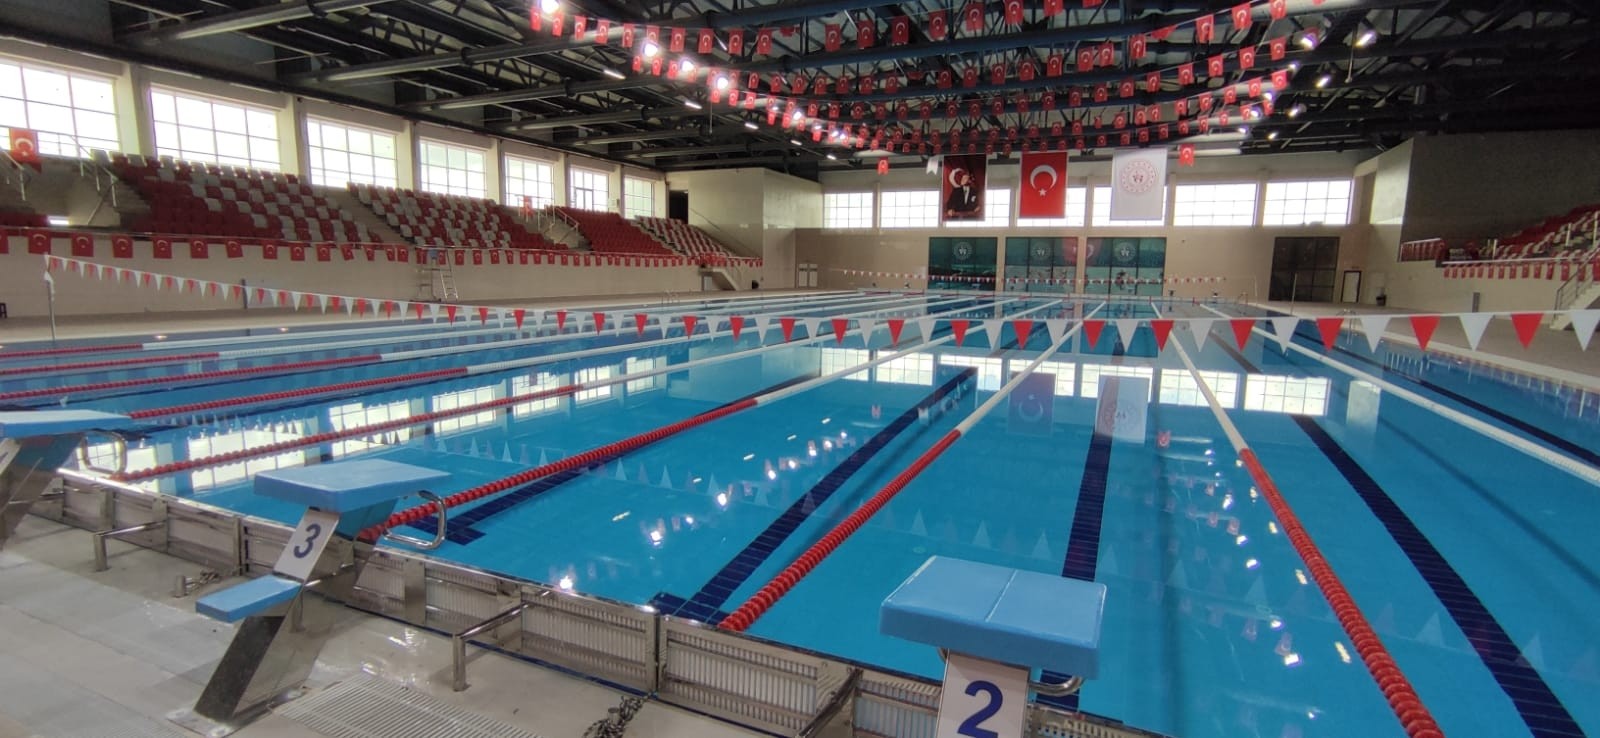 Olimpik kapalı yüzme havuzu hizmete girmek için gün sayıyor